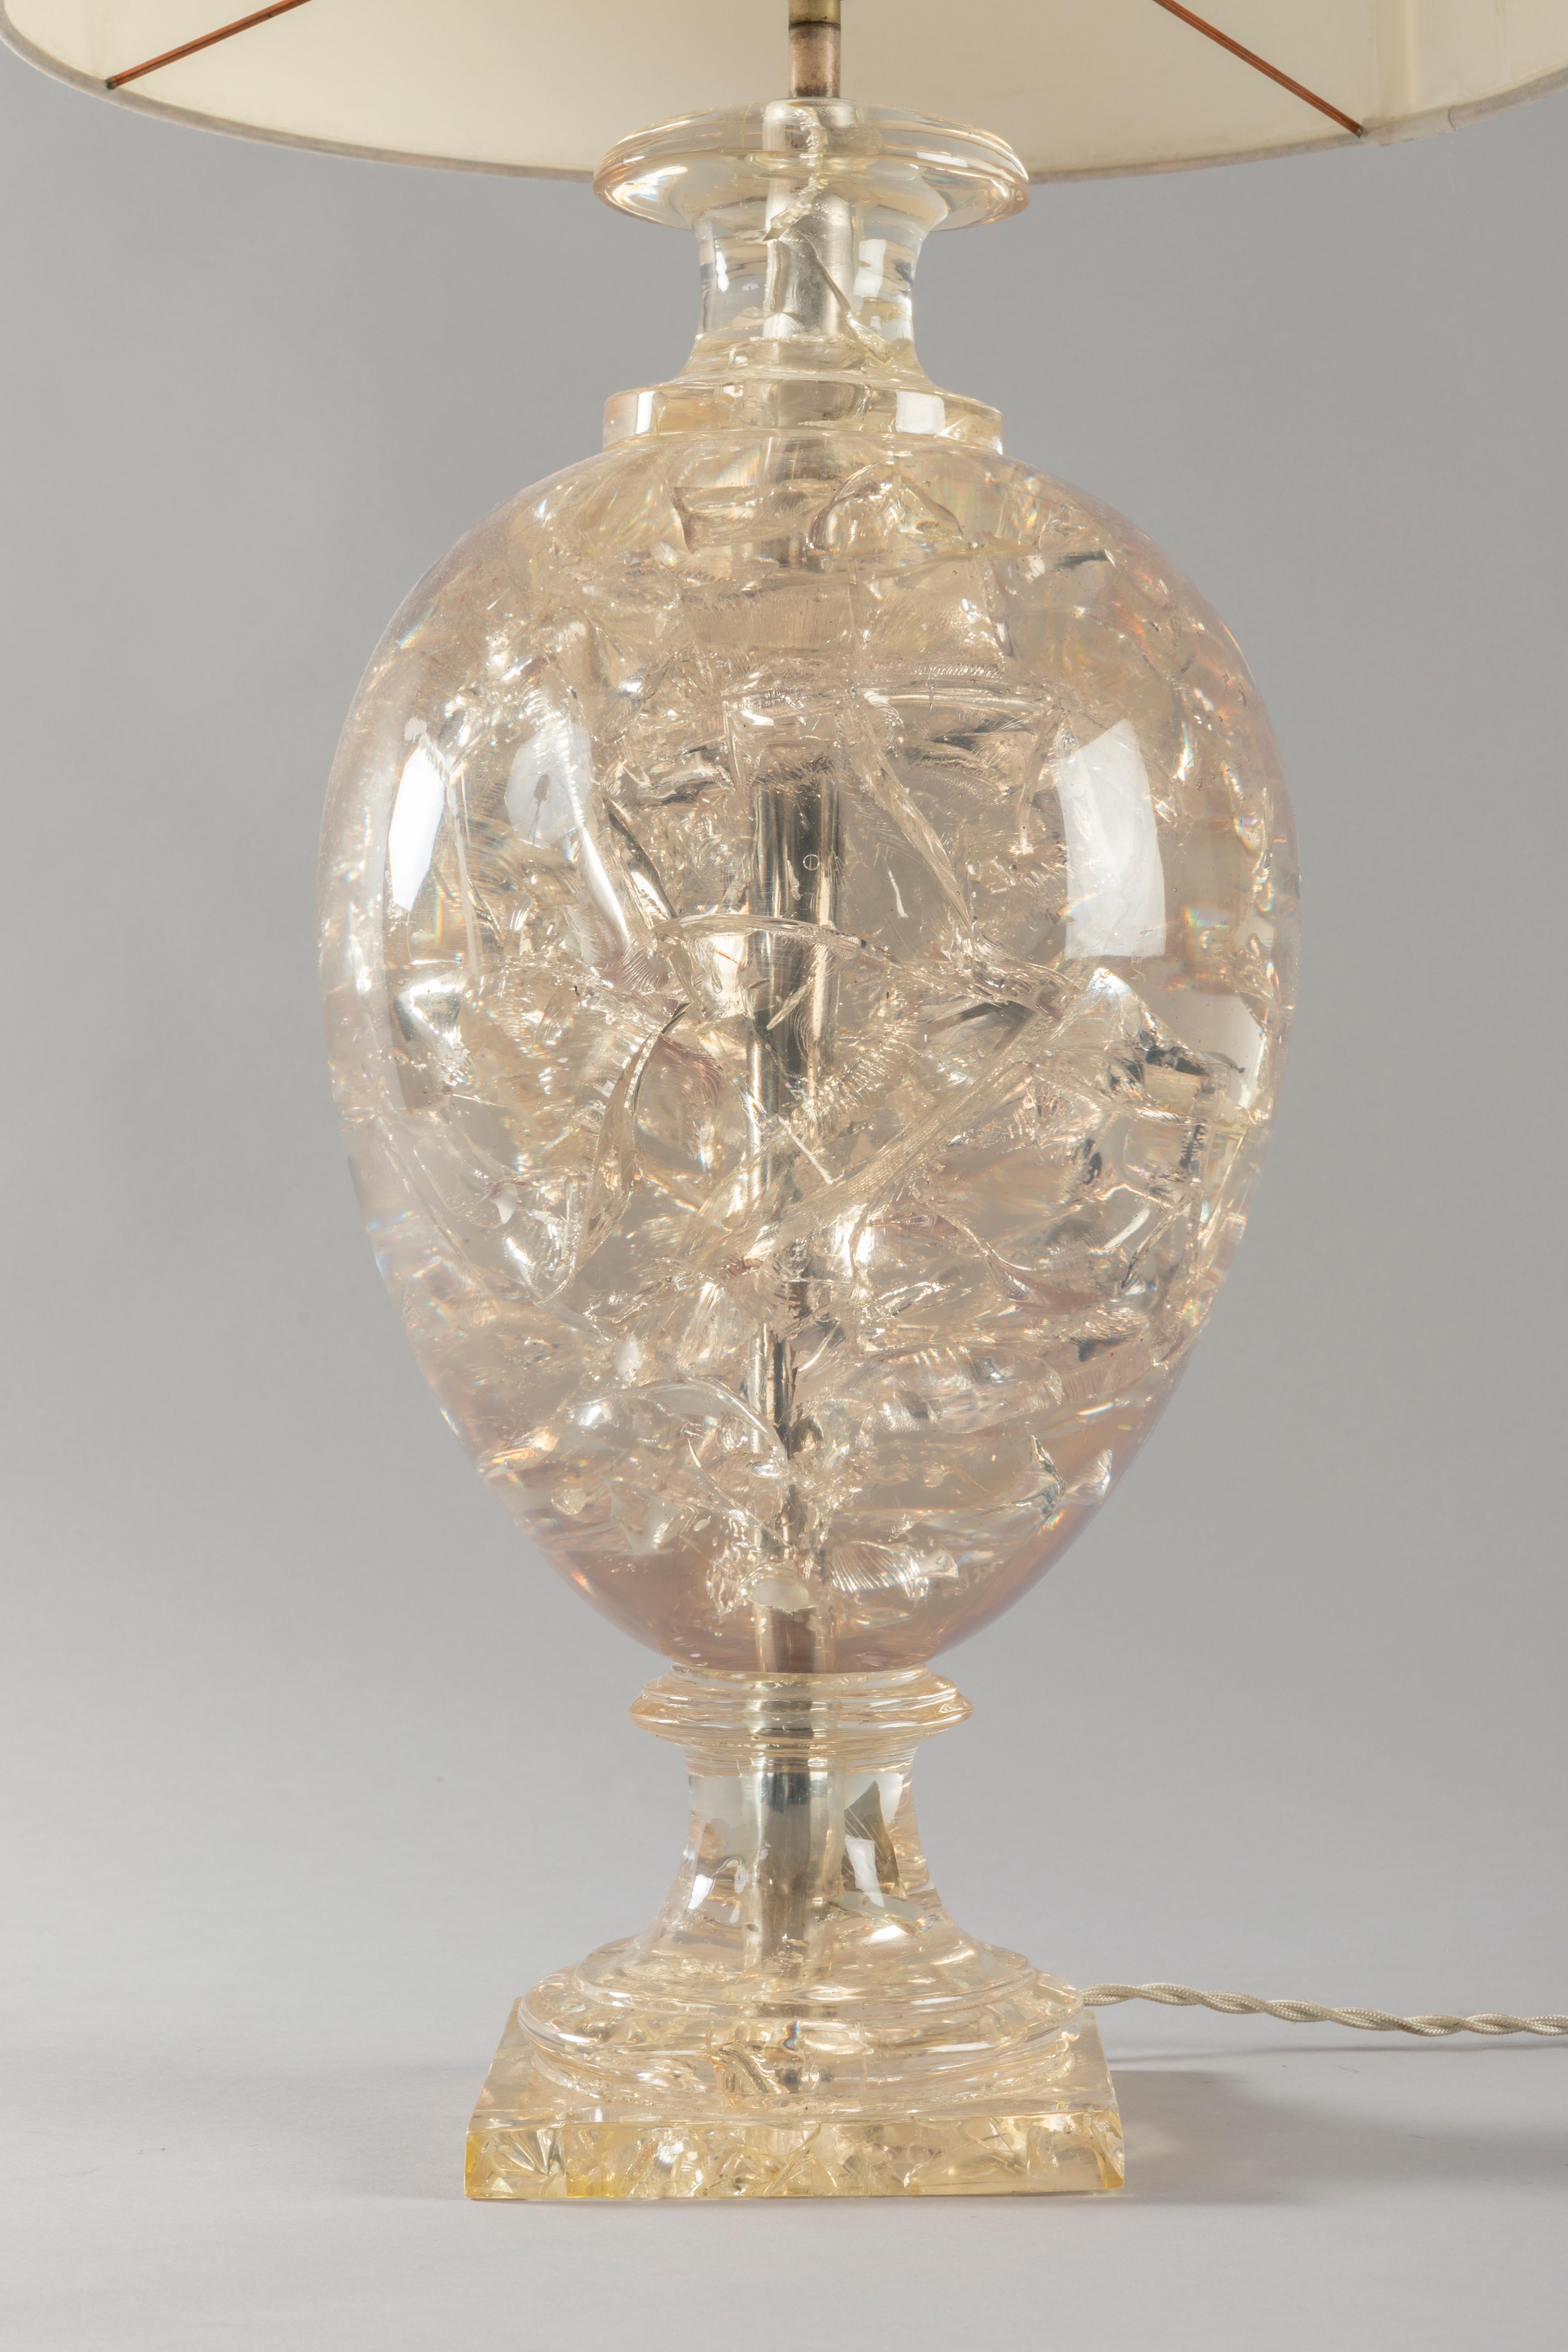 Un soupçon de couleur champagne pour cette belle lampe midcentury en résine fractale de Pierre Giraudon. Cette technique donne de beaux reflets et accroche la lumière. Très glamour.